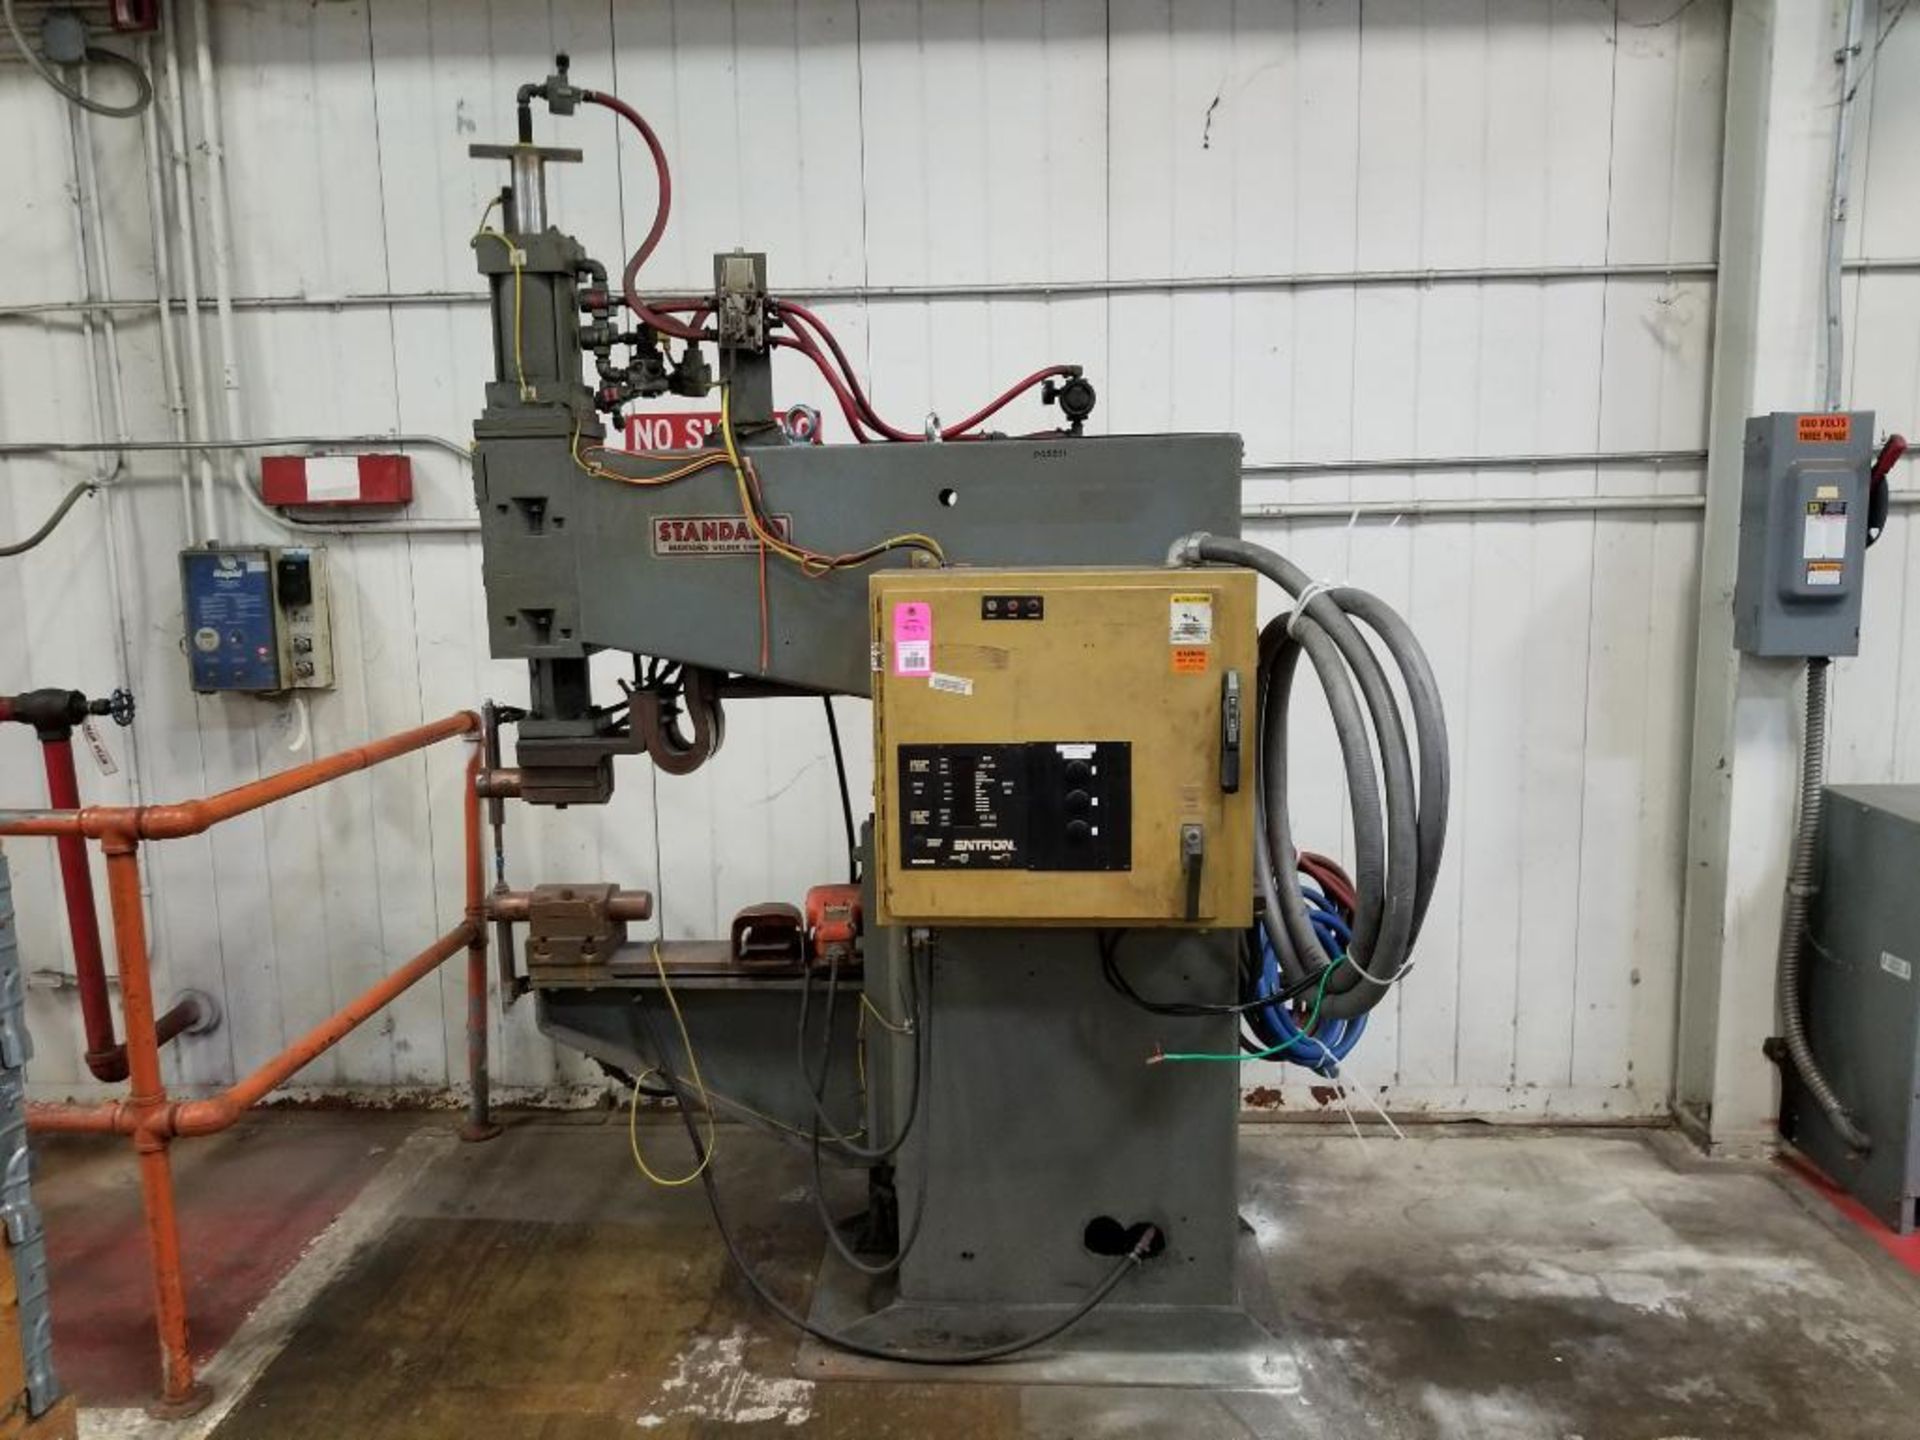 Standard Resistance Welder Company PP1-24-100 w/ Entron EN1000 control welding system press. 440V.